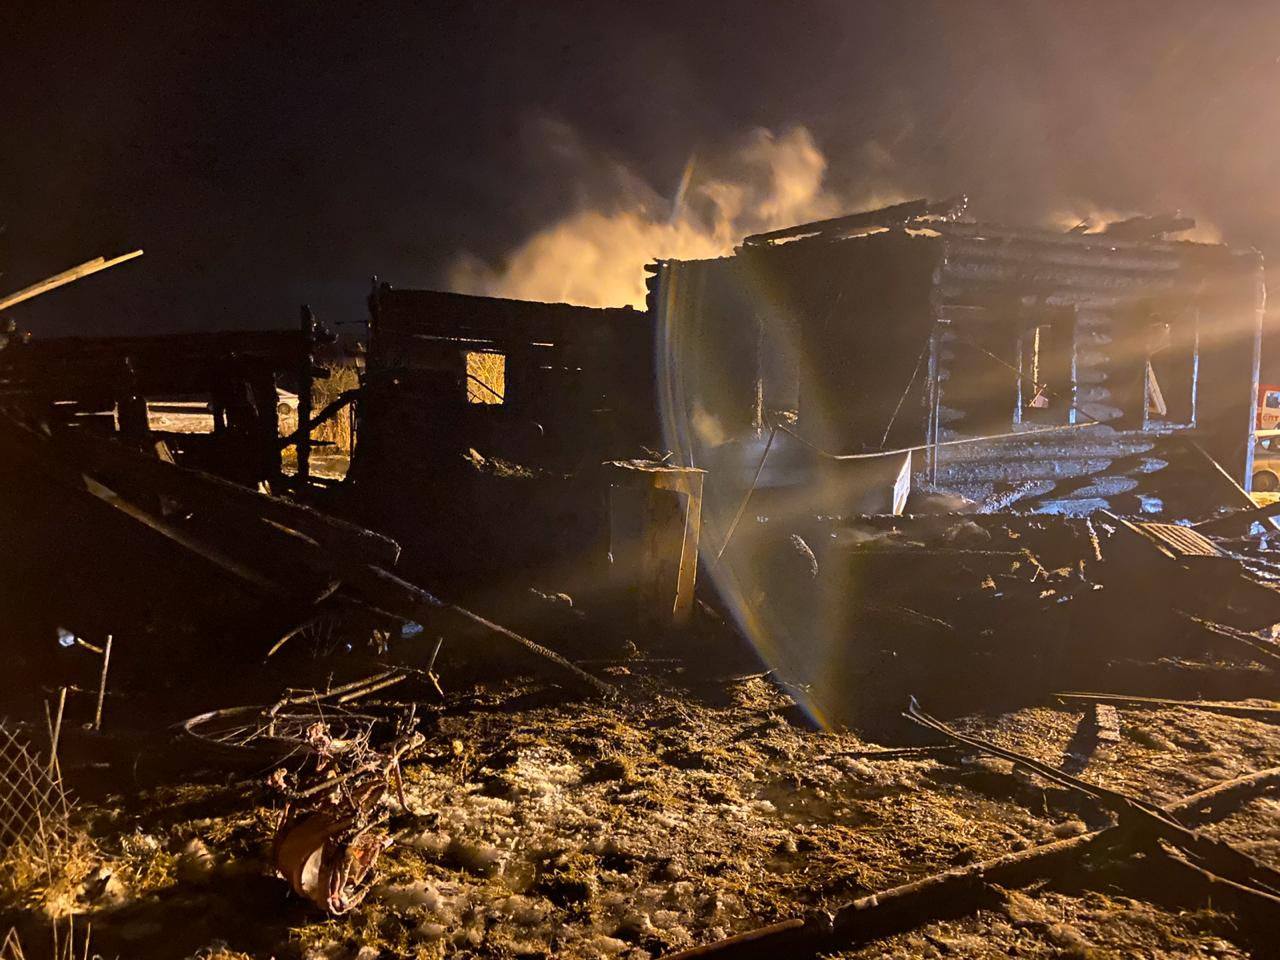 Родителей спасли соседи: трое детей погибли в пожаре под Ярославлем